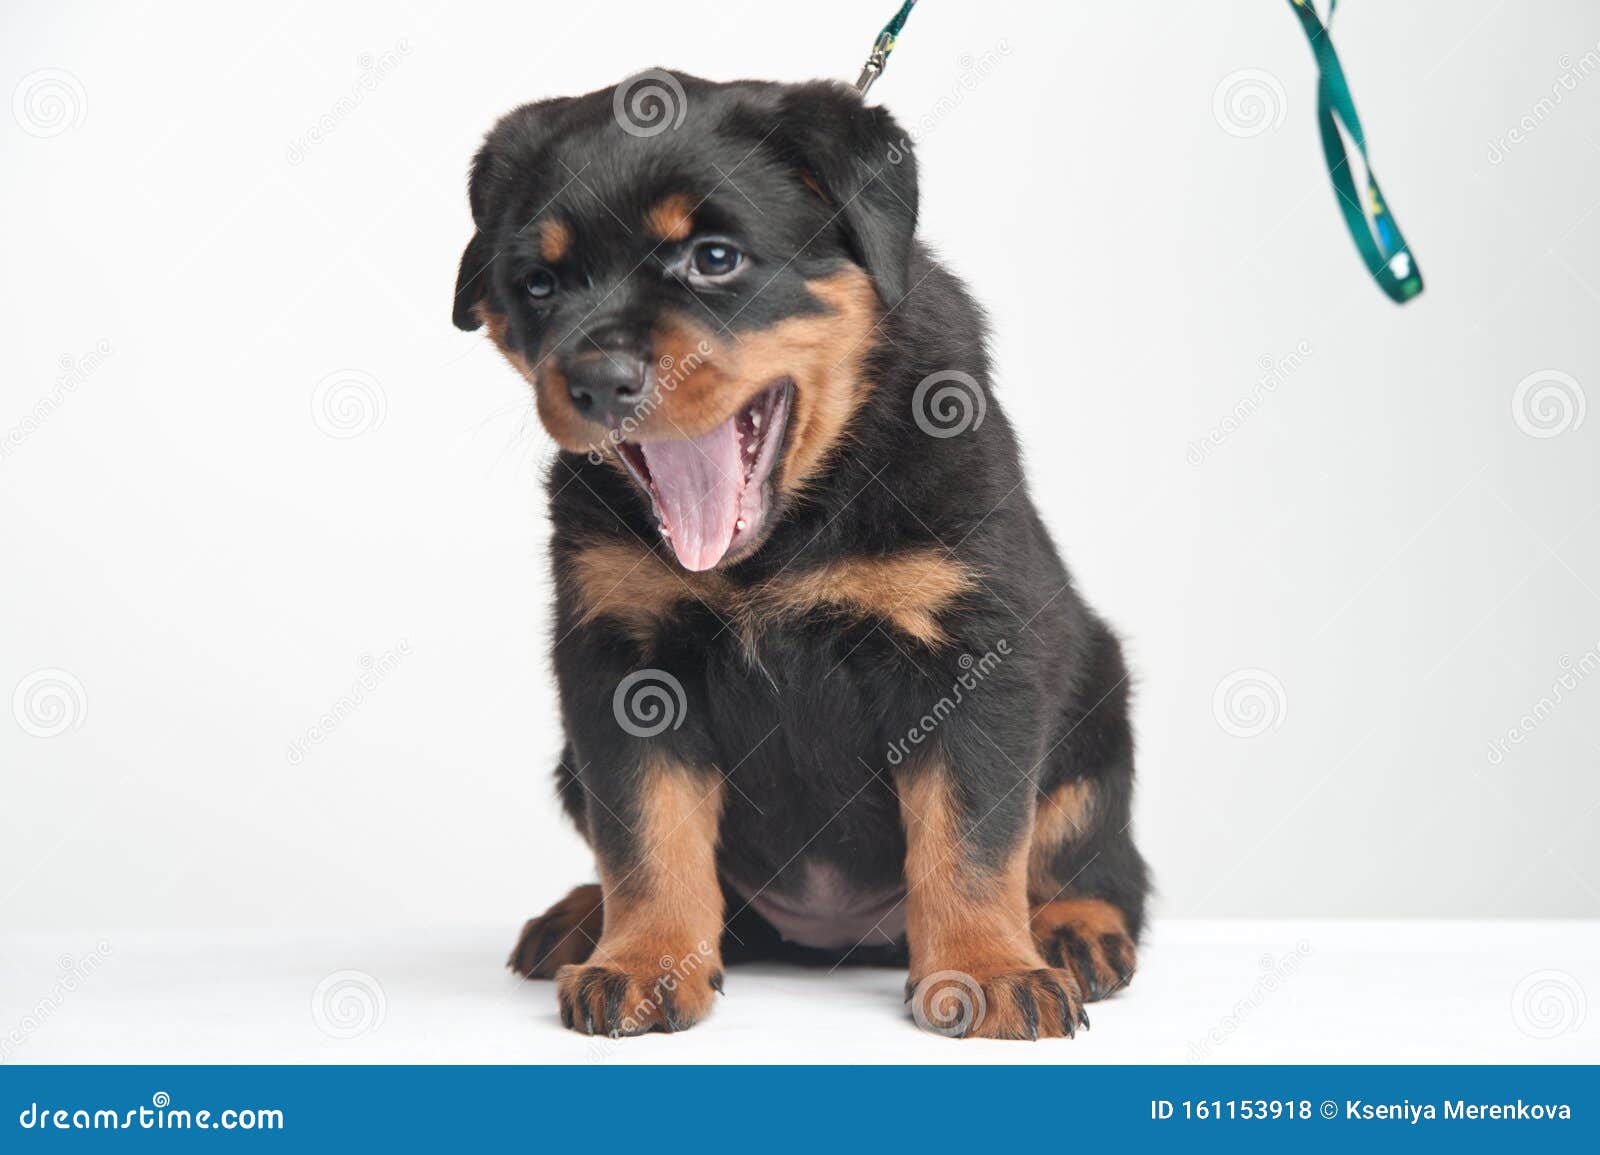 Nhìn chú chó Rottweiler nhỏ xinh xắn này, bạn sẽ cảm thấy thương và tình cảm. Sự vui vẻ và linh hoạt của chú cún còn làm bạn cười, chắc chắn sẽ khiến bạn không thể rời mắt khỏi hình ảnh đầy nghị lực này.